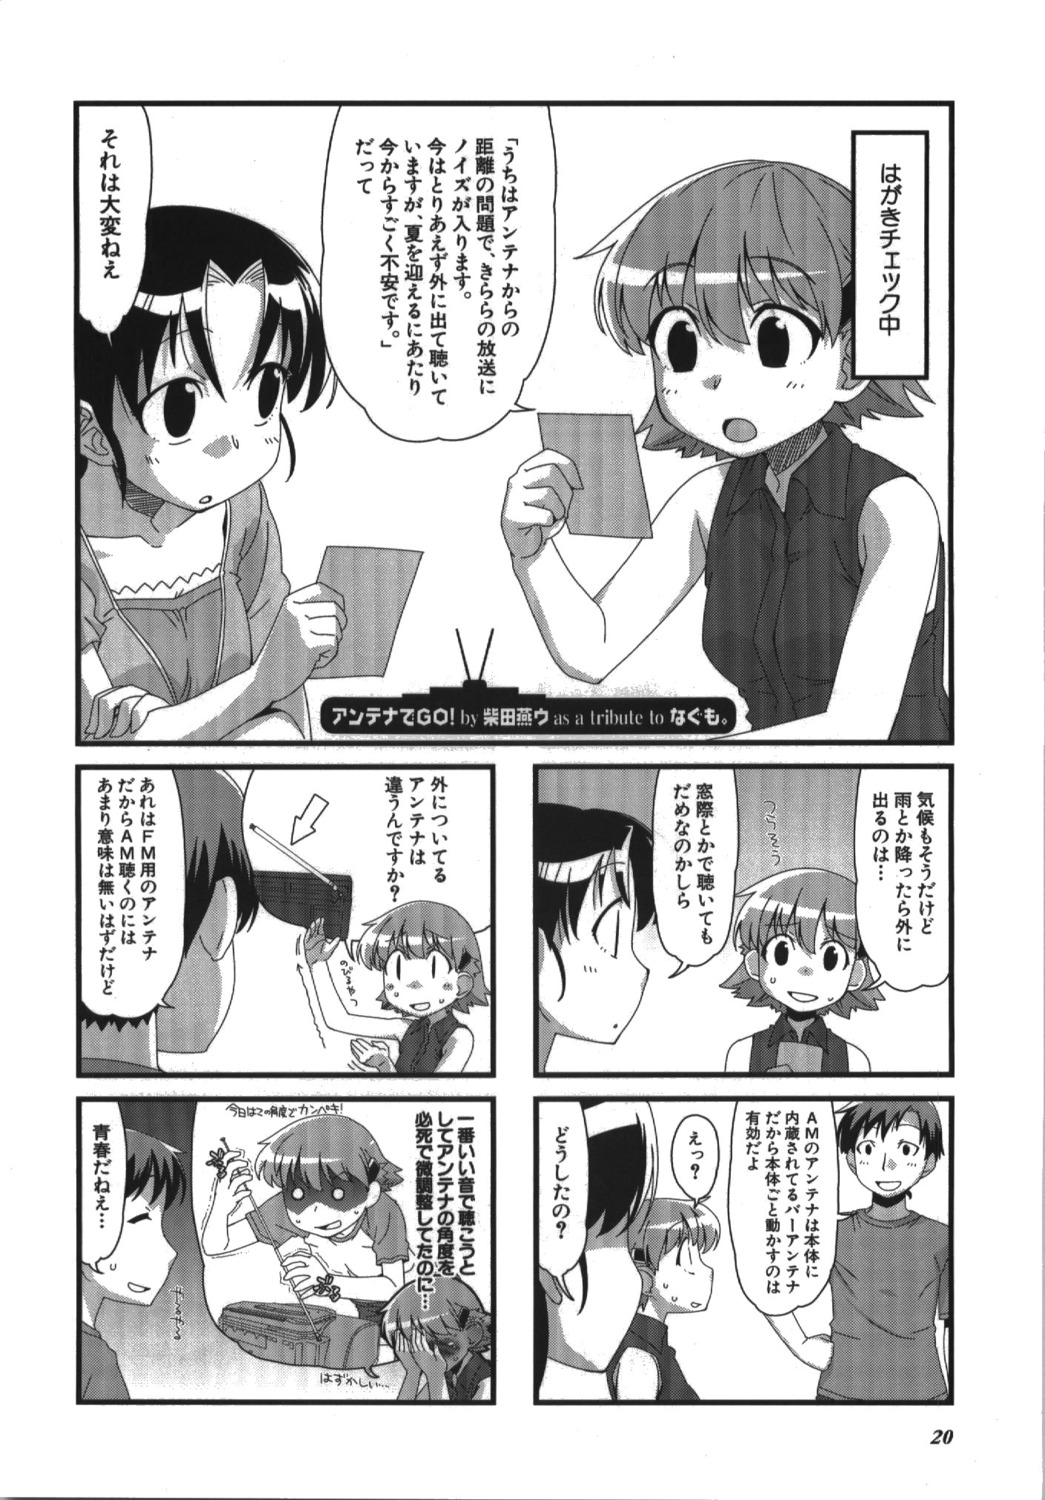 4koma manga_time_kirara monochrome shibata_tsubakurou